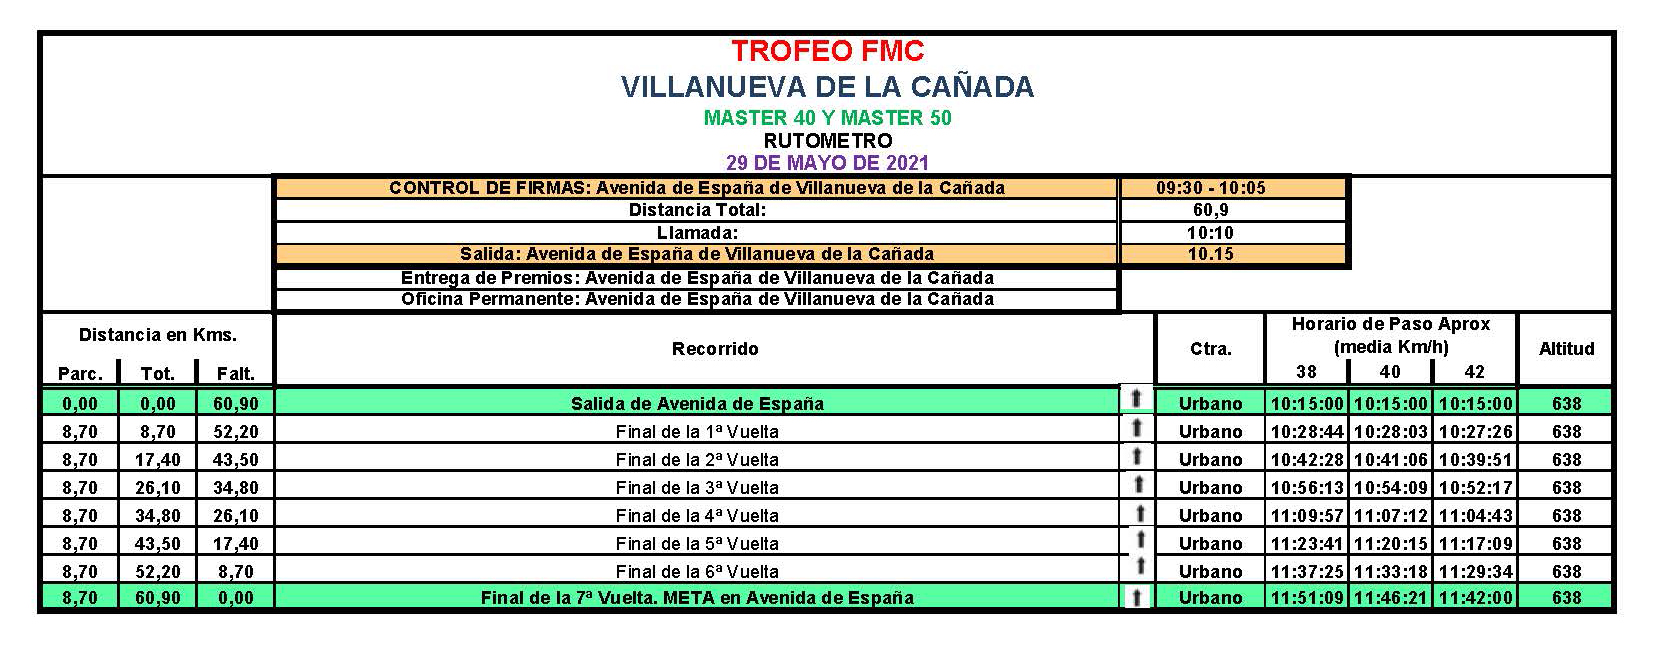 El 29 de Mayo la FMC organiza el I Trofeo FMC en Villanueva de la Cañada